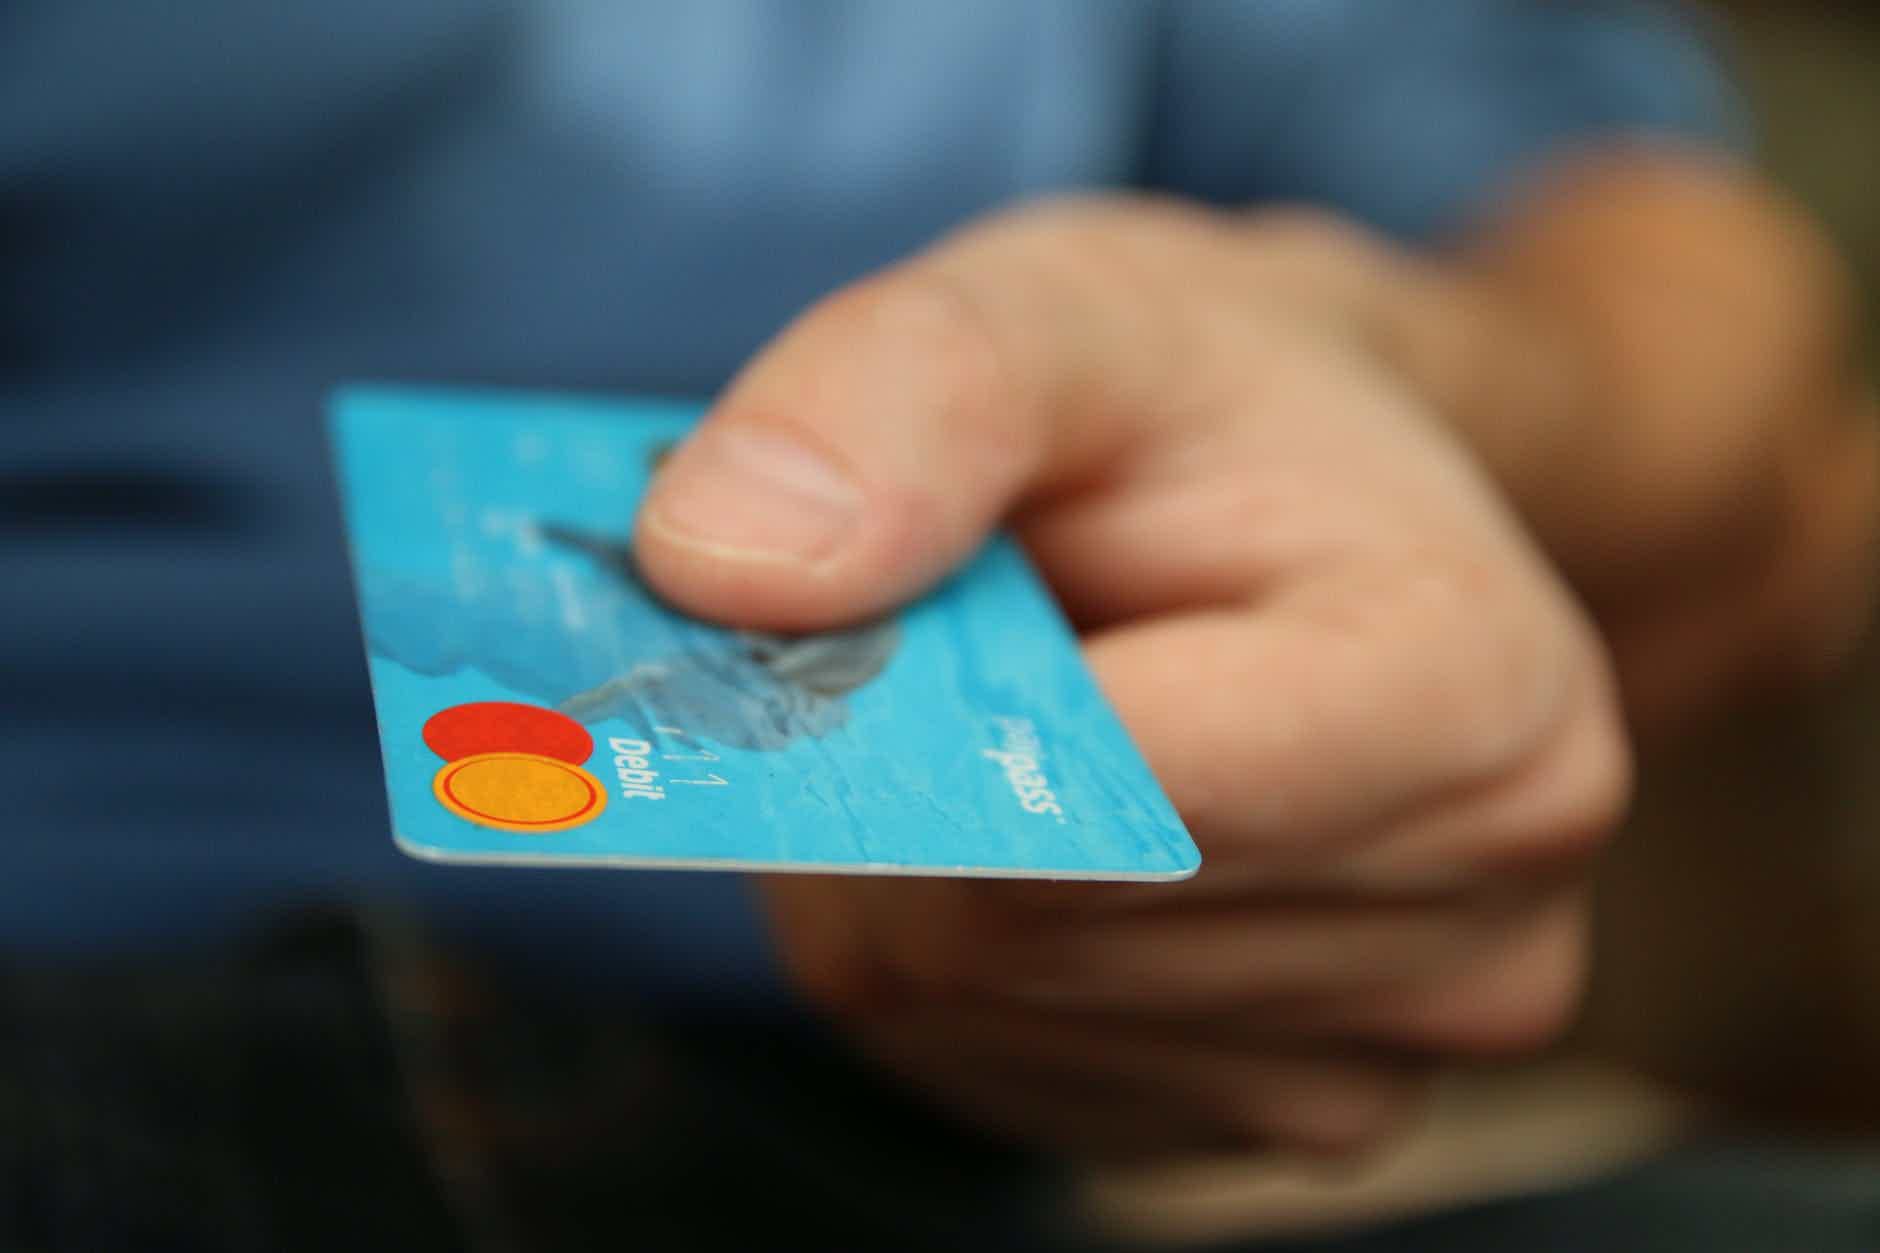 Afinal, como solicitar cartão pré-pago online? Fonte: Pexels.